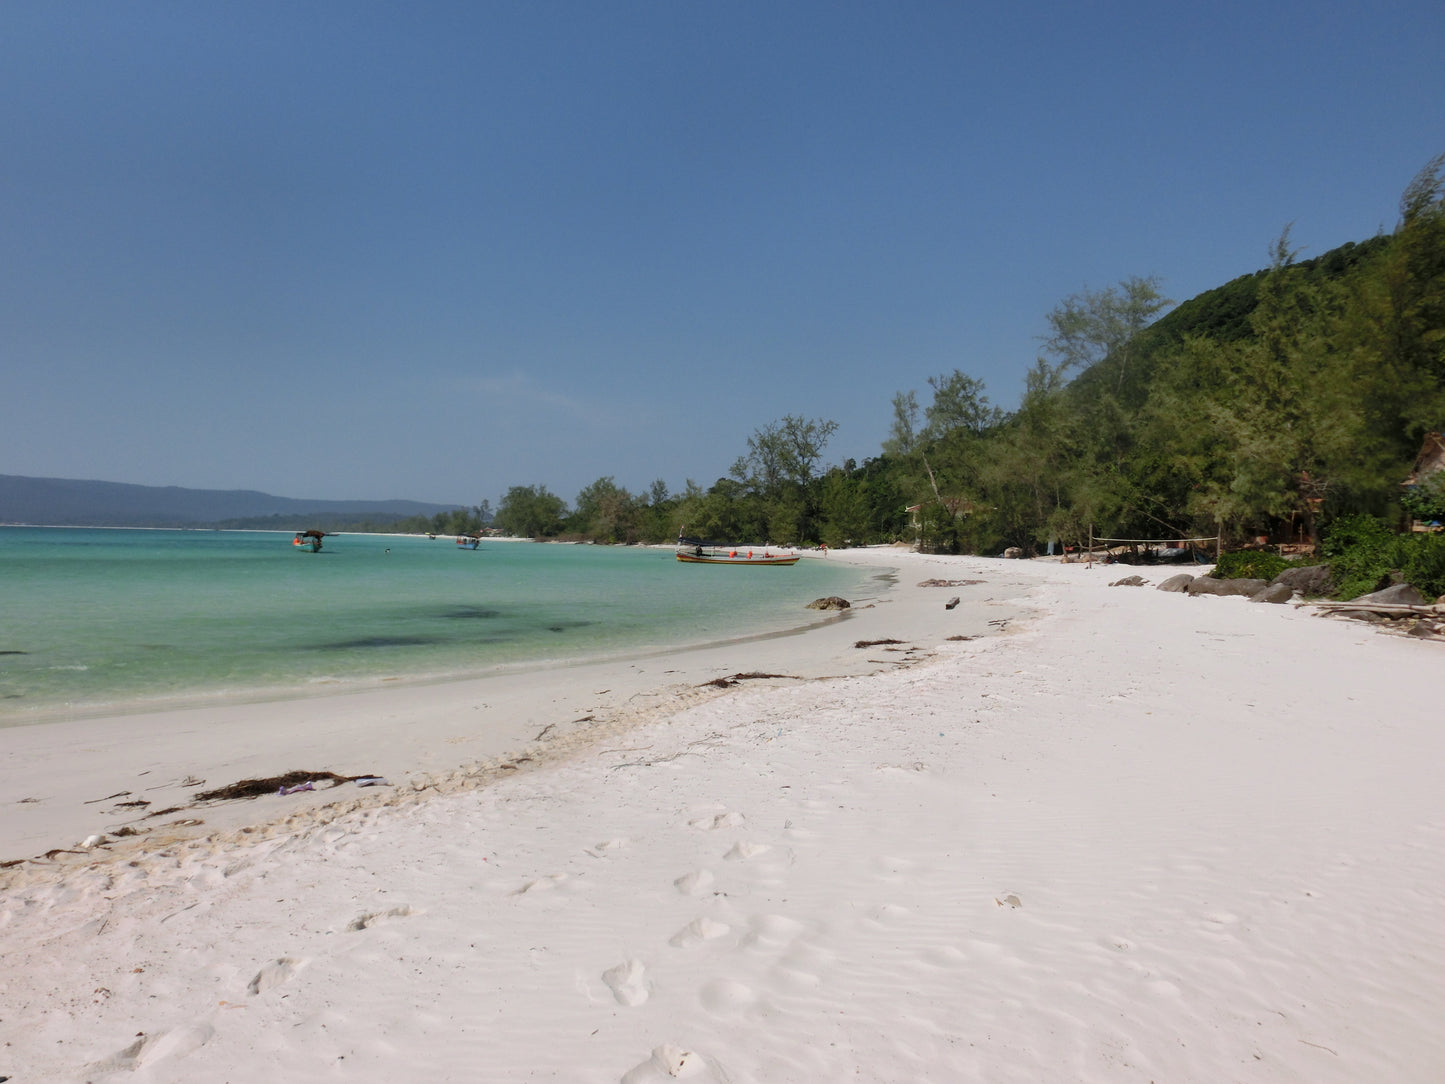 A6C : (3 jours) Île de Koh Rong, Cambodge : une aventure paradisiaque tropicale